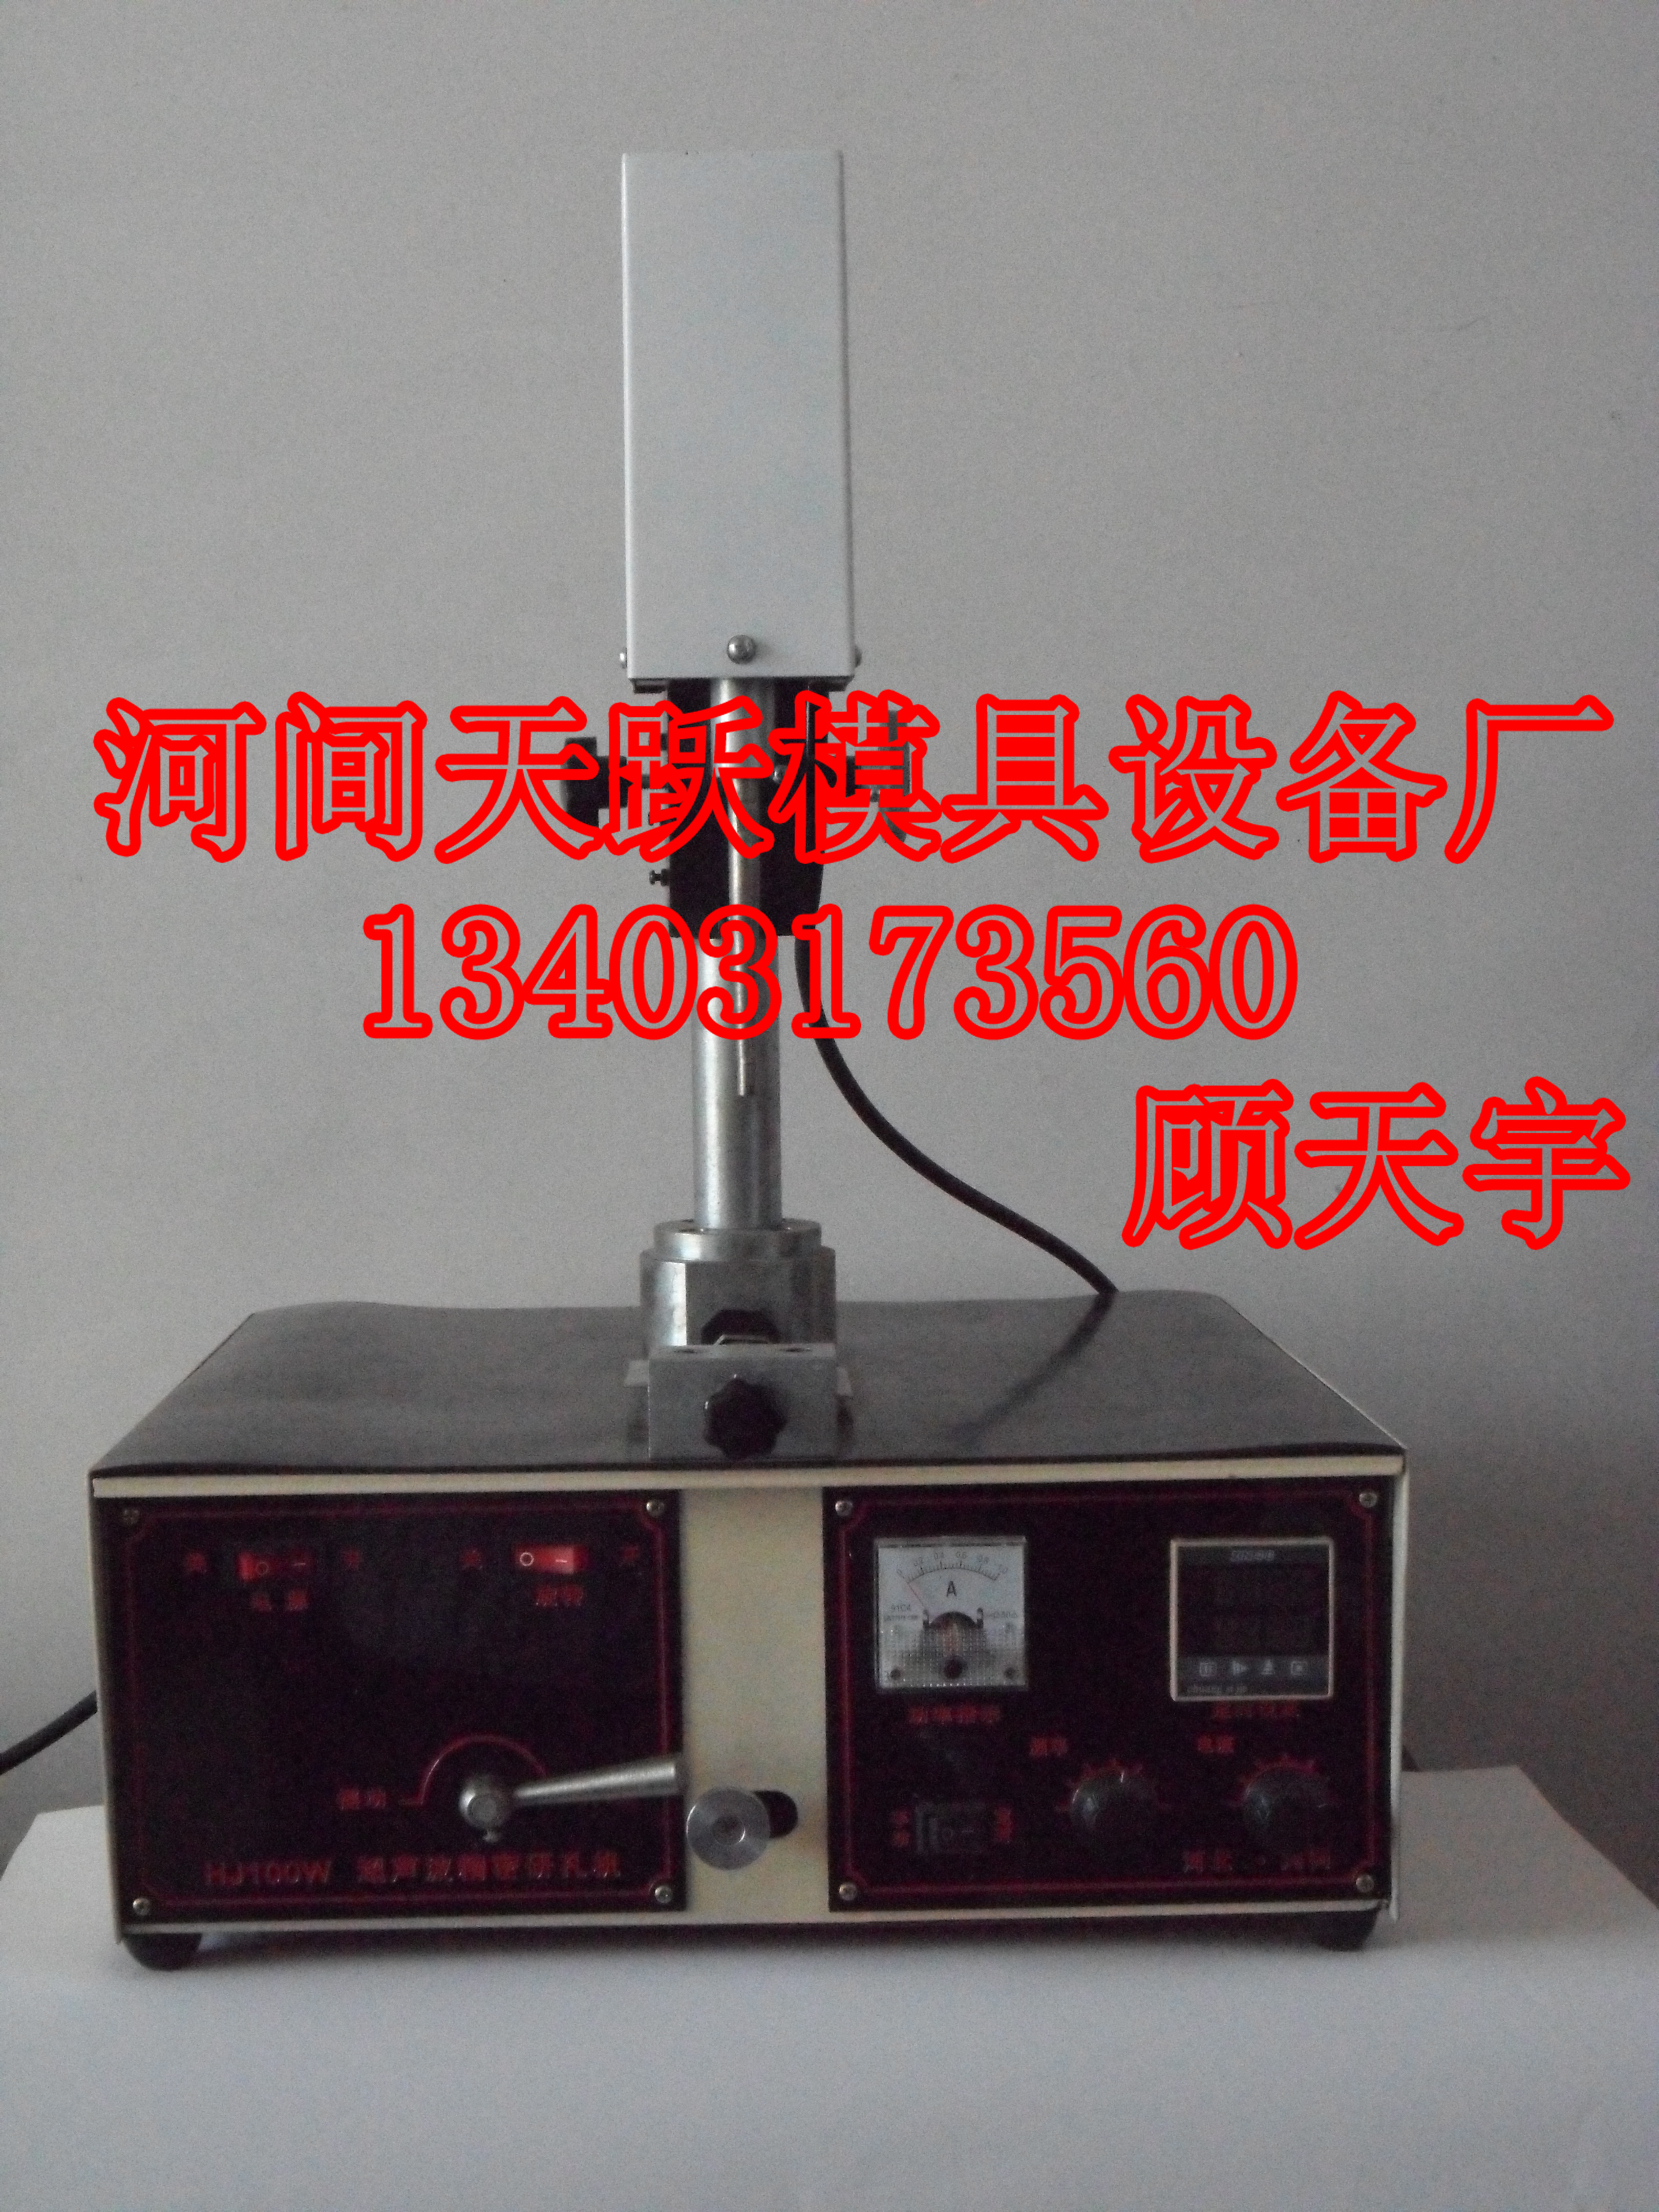 供应TY-200型超声波研磨机 TY-200型超声波研磨机